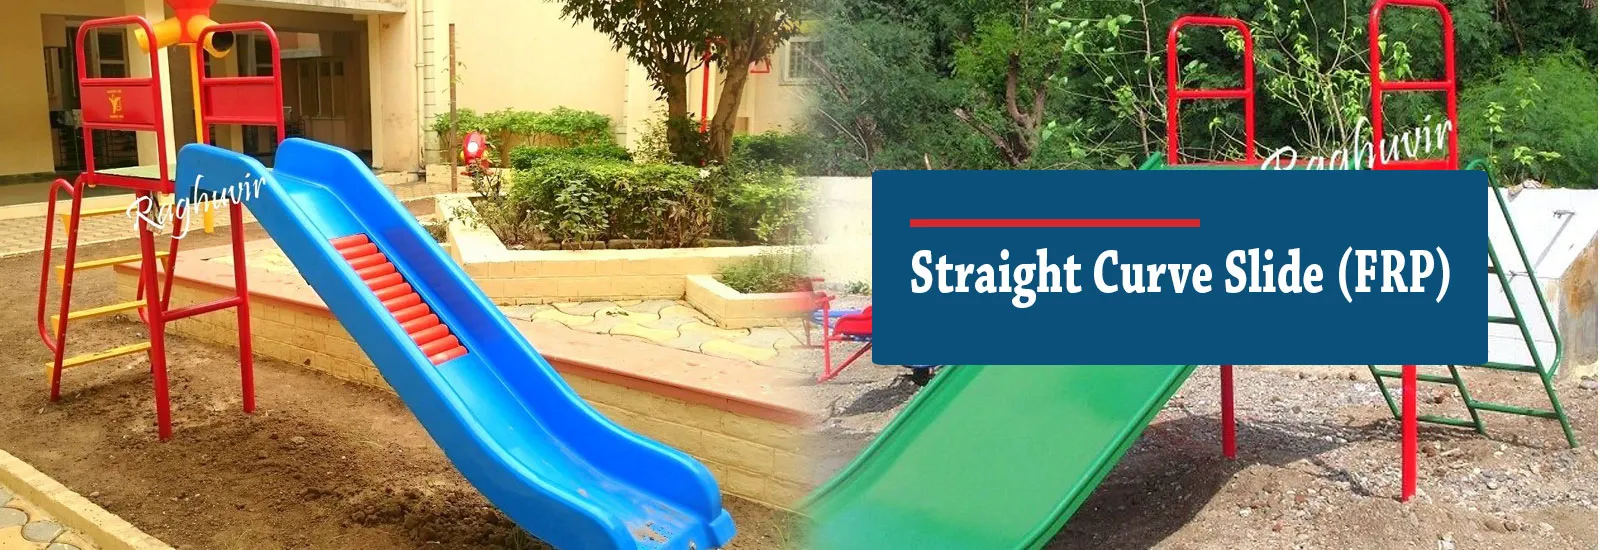 outdoor playground equipments for children manufacturer in Gujarat